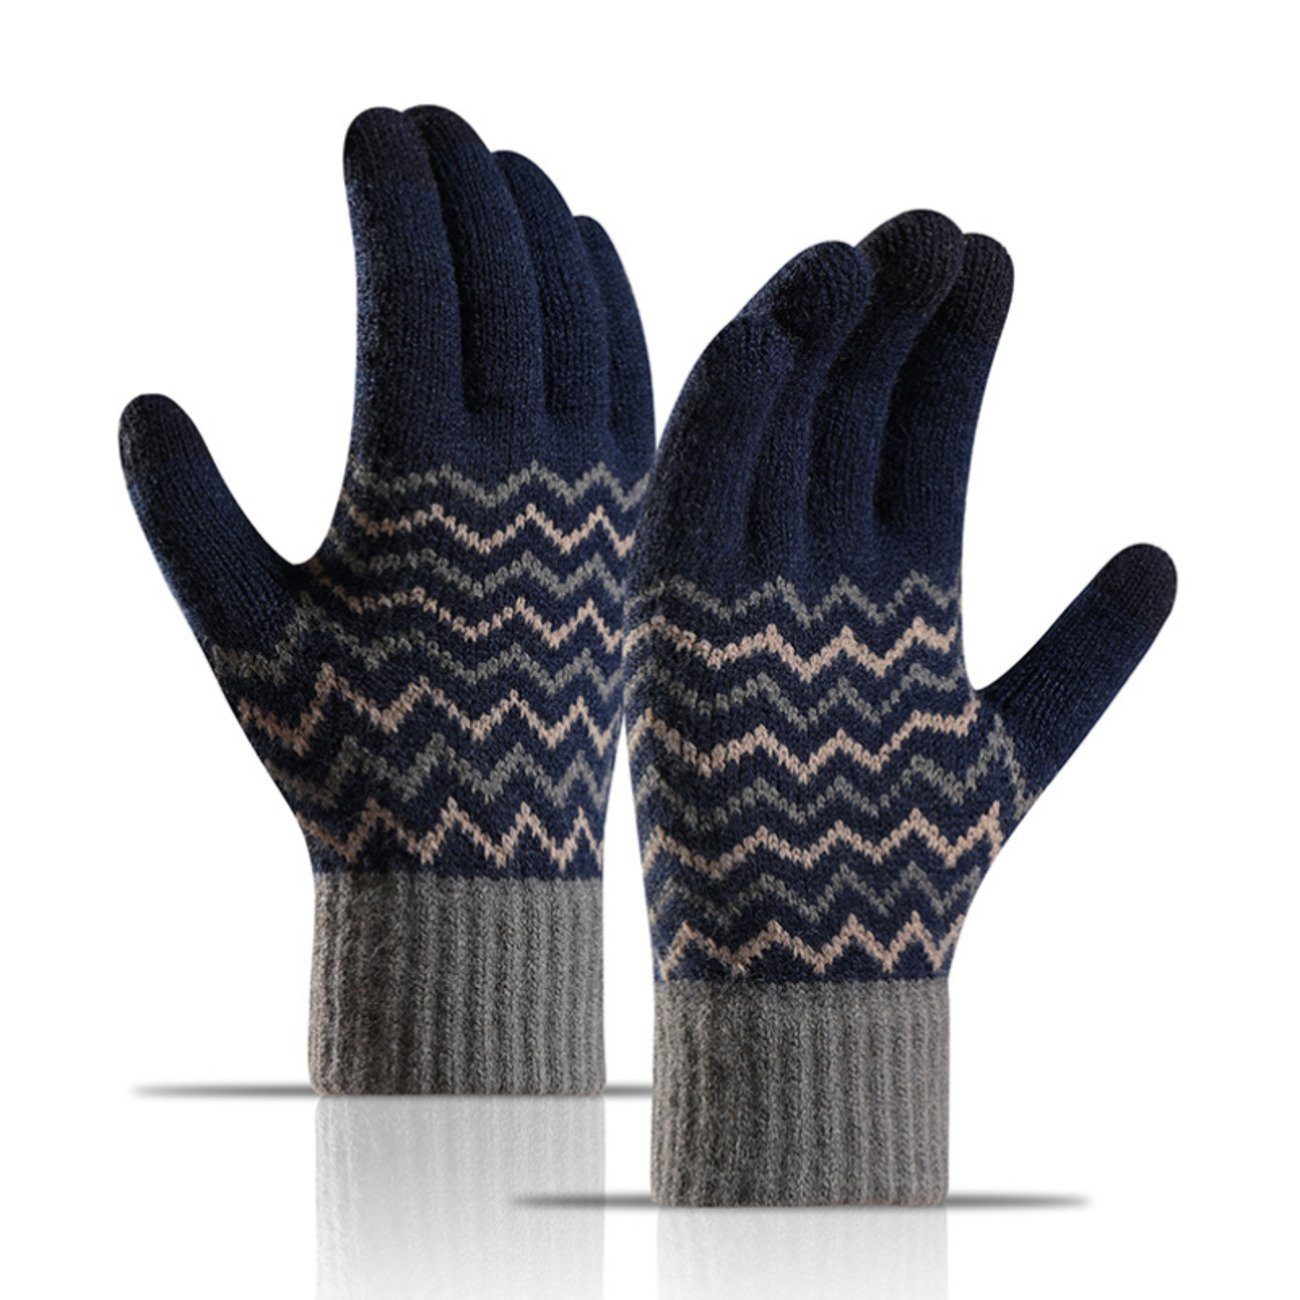 Reisen warme schwarz Union und Kältebeständige Strickhandschuhe Herren Touchscreen-Strickhandschuhe für